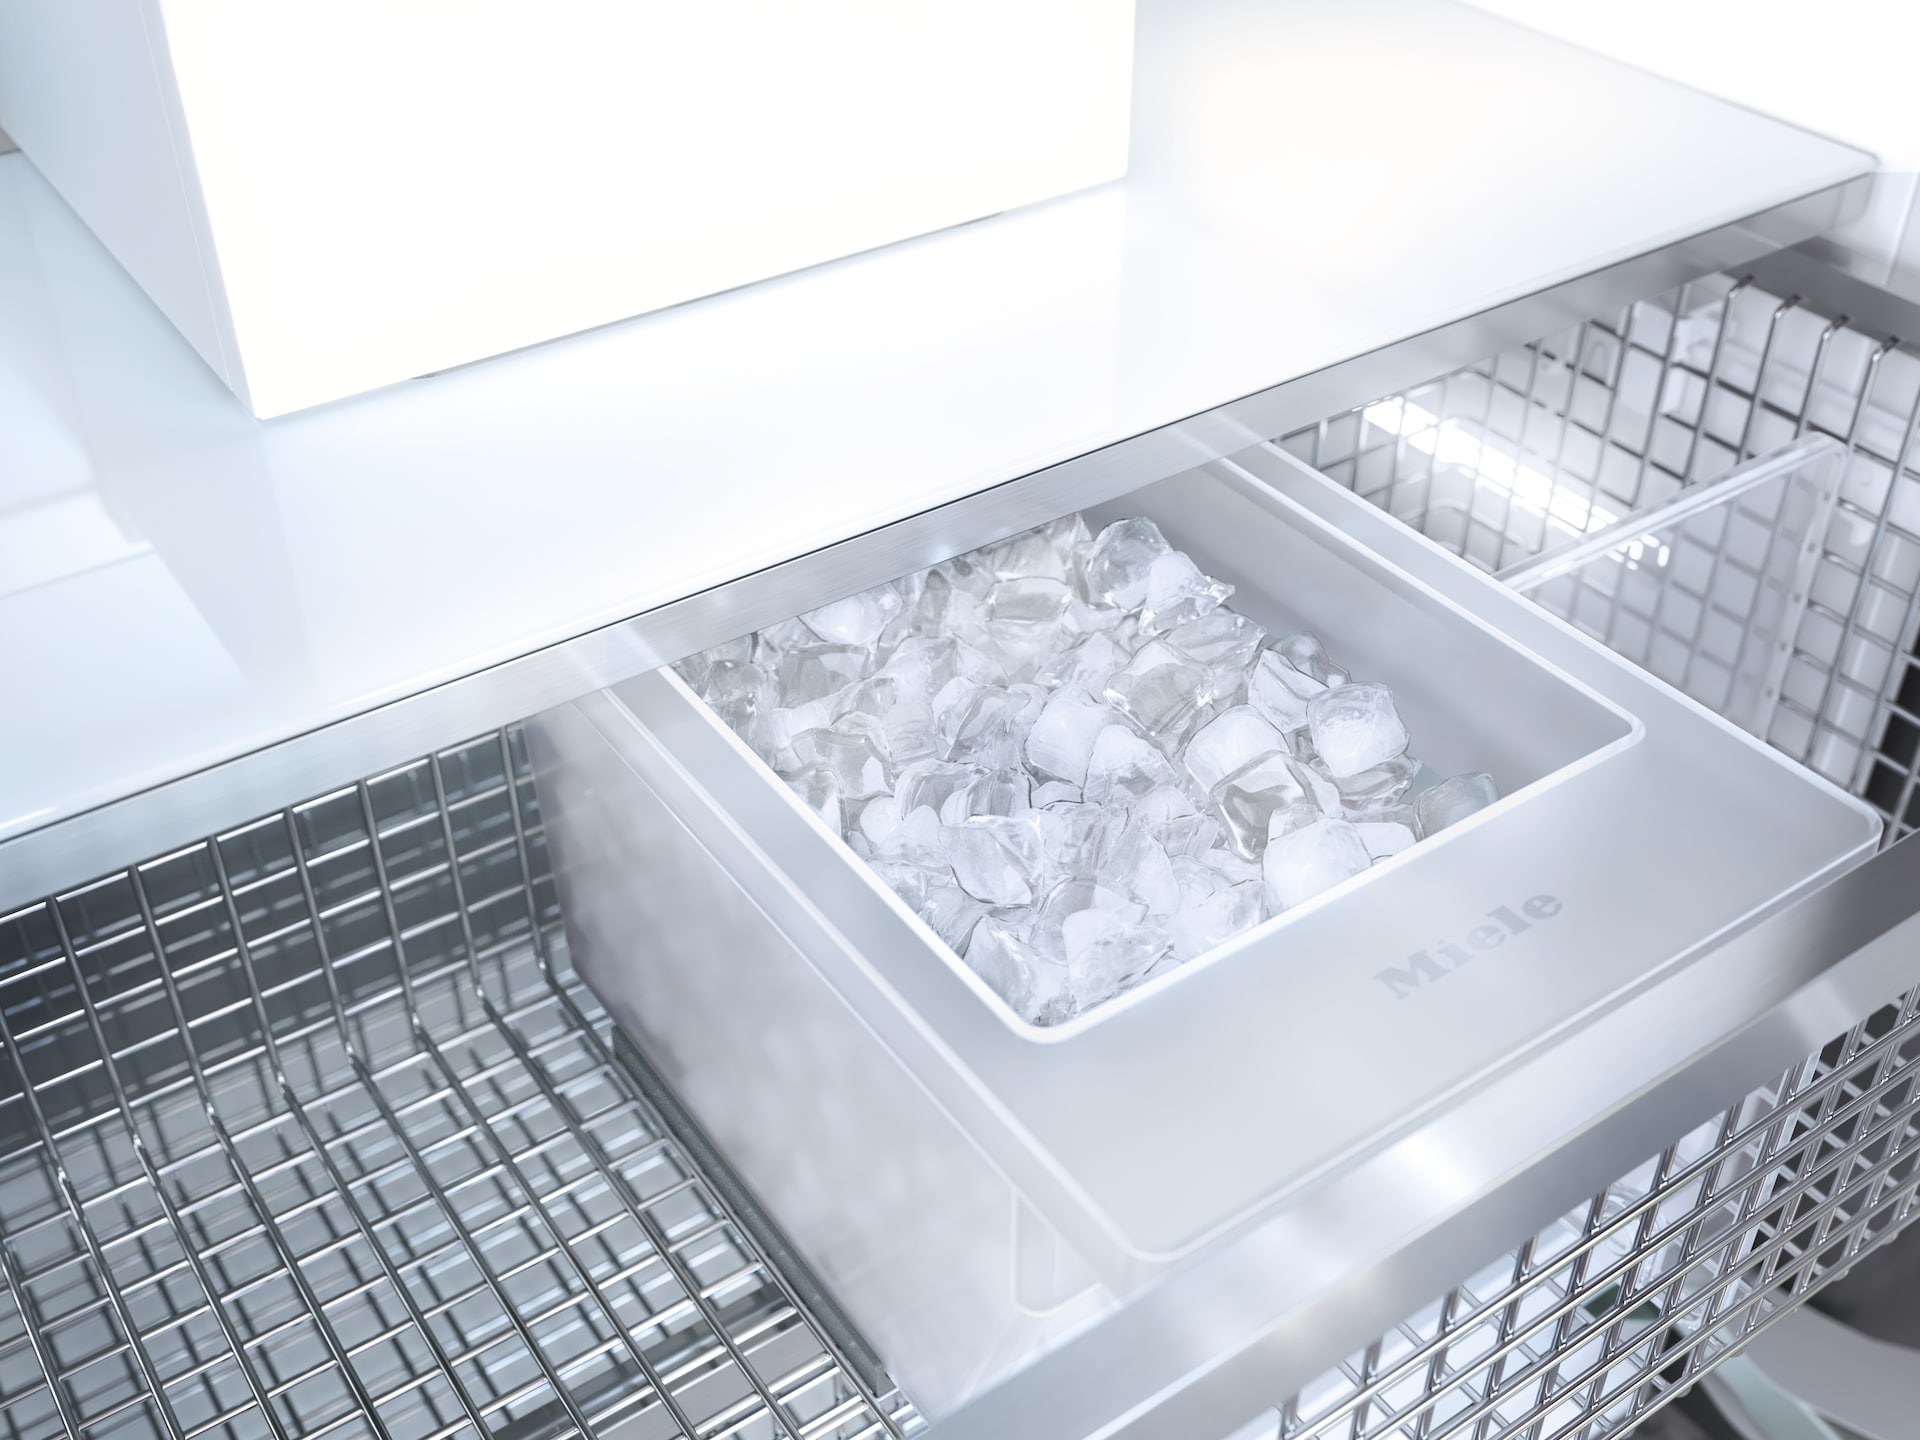 Refrigeration - F 2412 Vi - 3